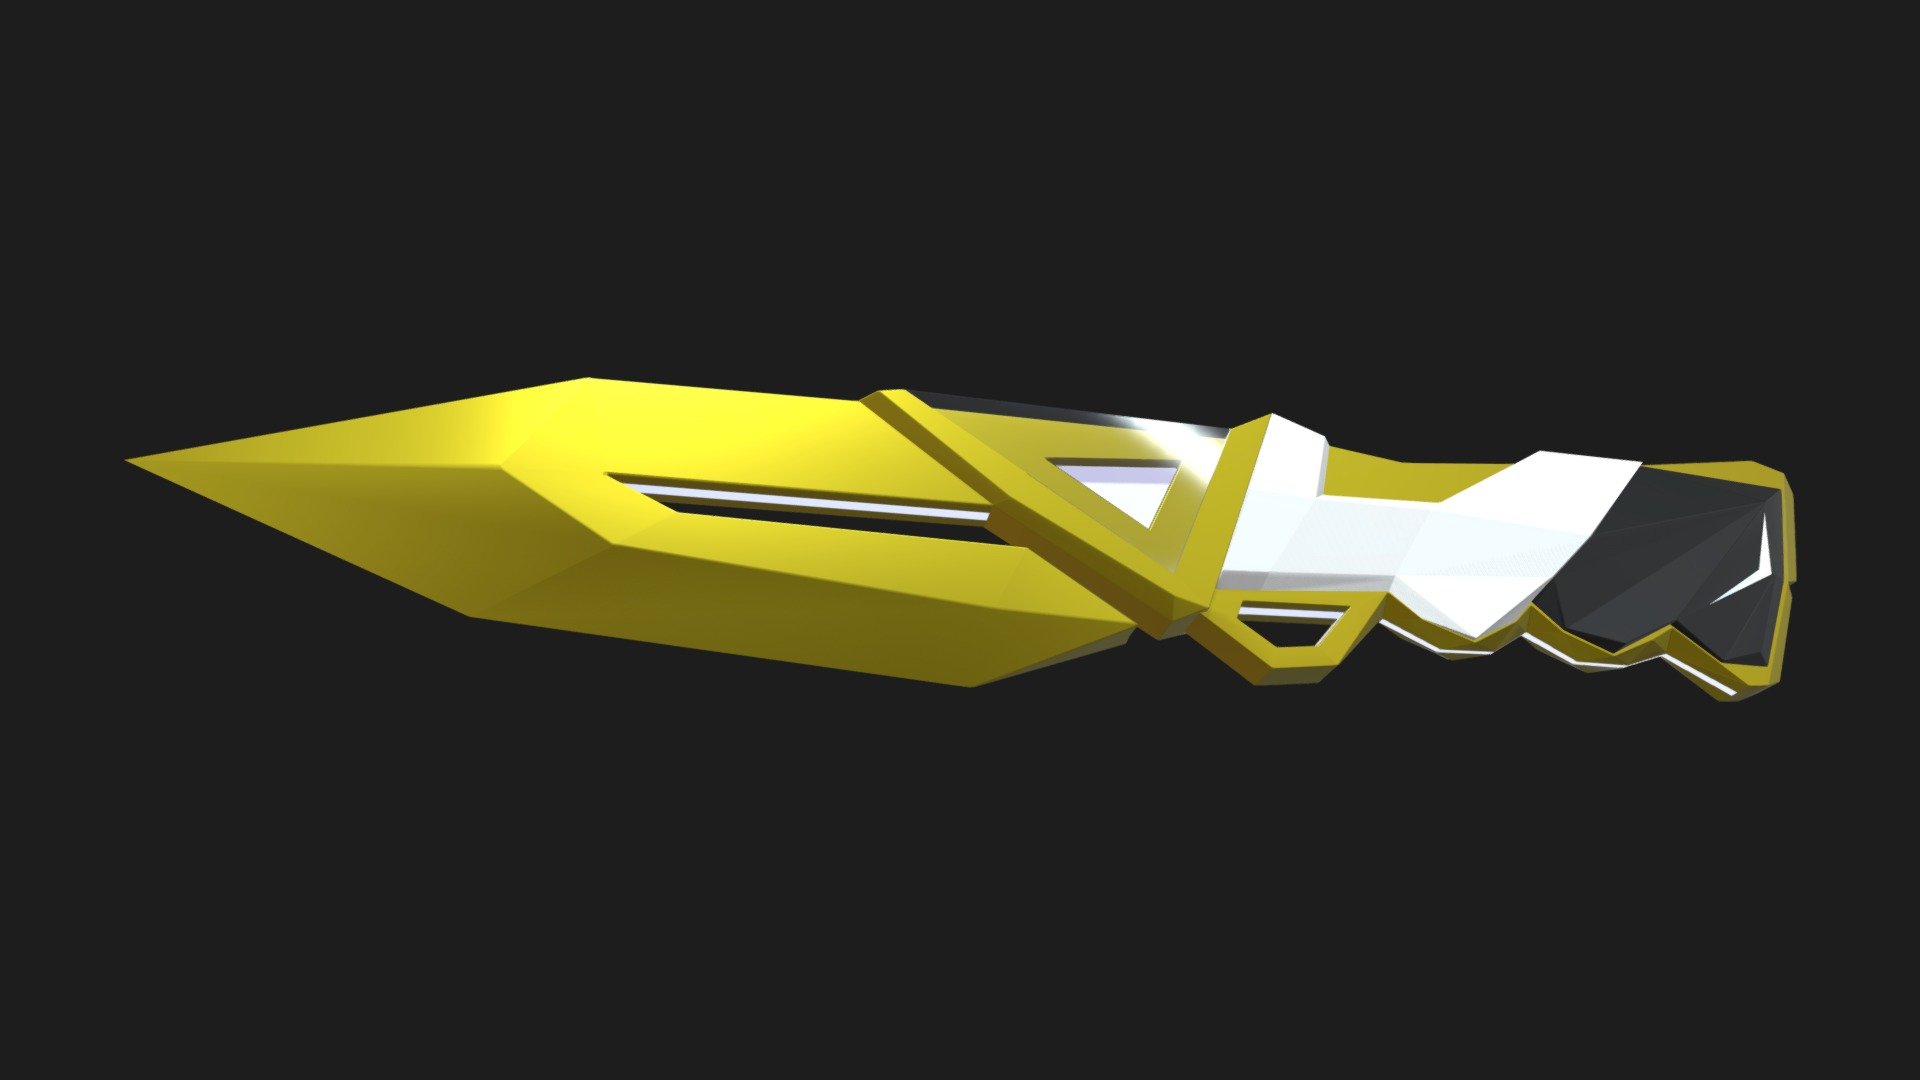 Valorant inspired knife 3d model